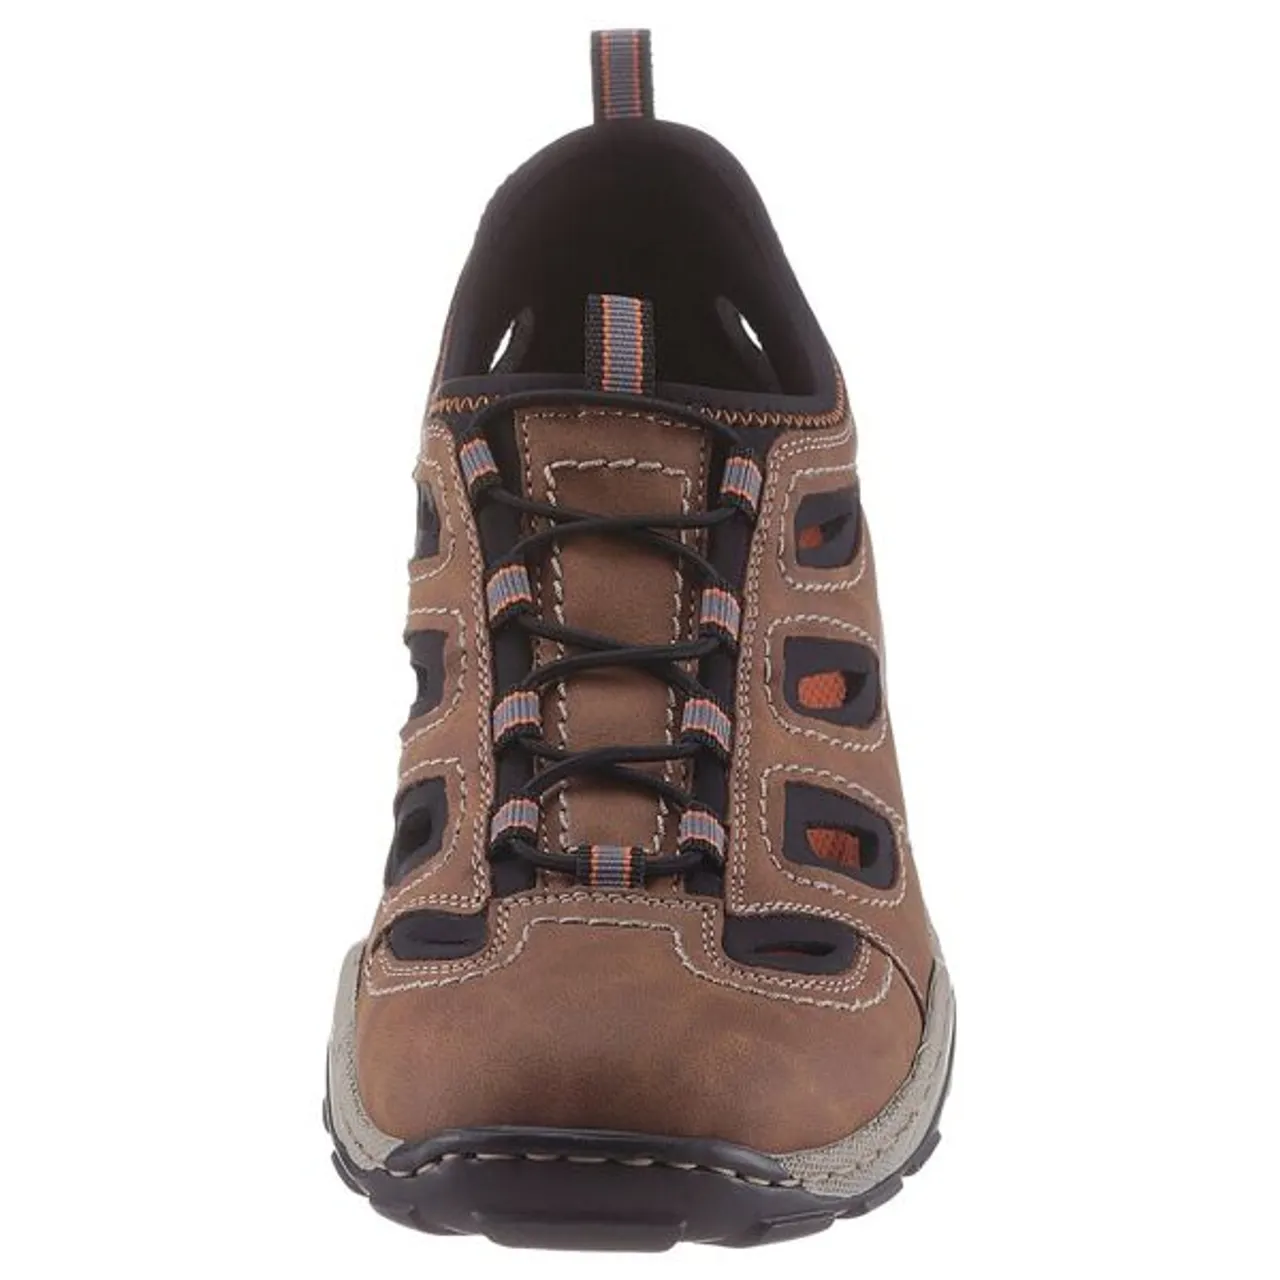 Slipper RIEKER Gr. 40, braun (braun schwarz) Herren Schuhe Stoffschuhe Trekking Schuh, Sandale, Sommerschuh mit praktischem Gummizug